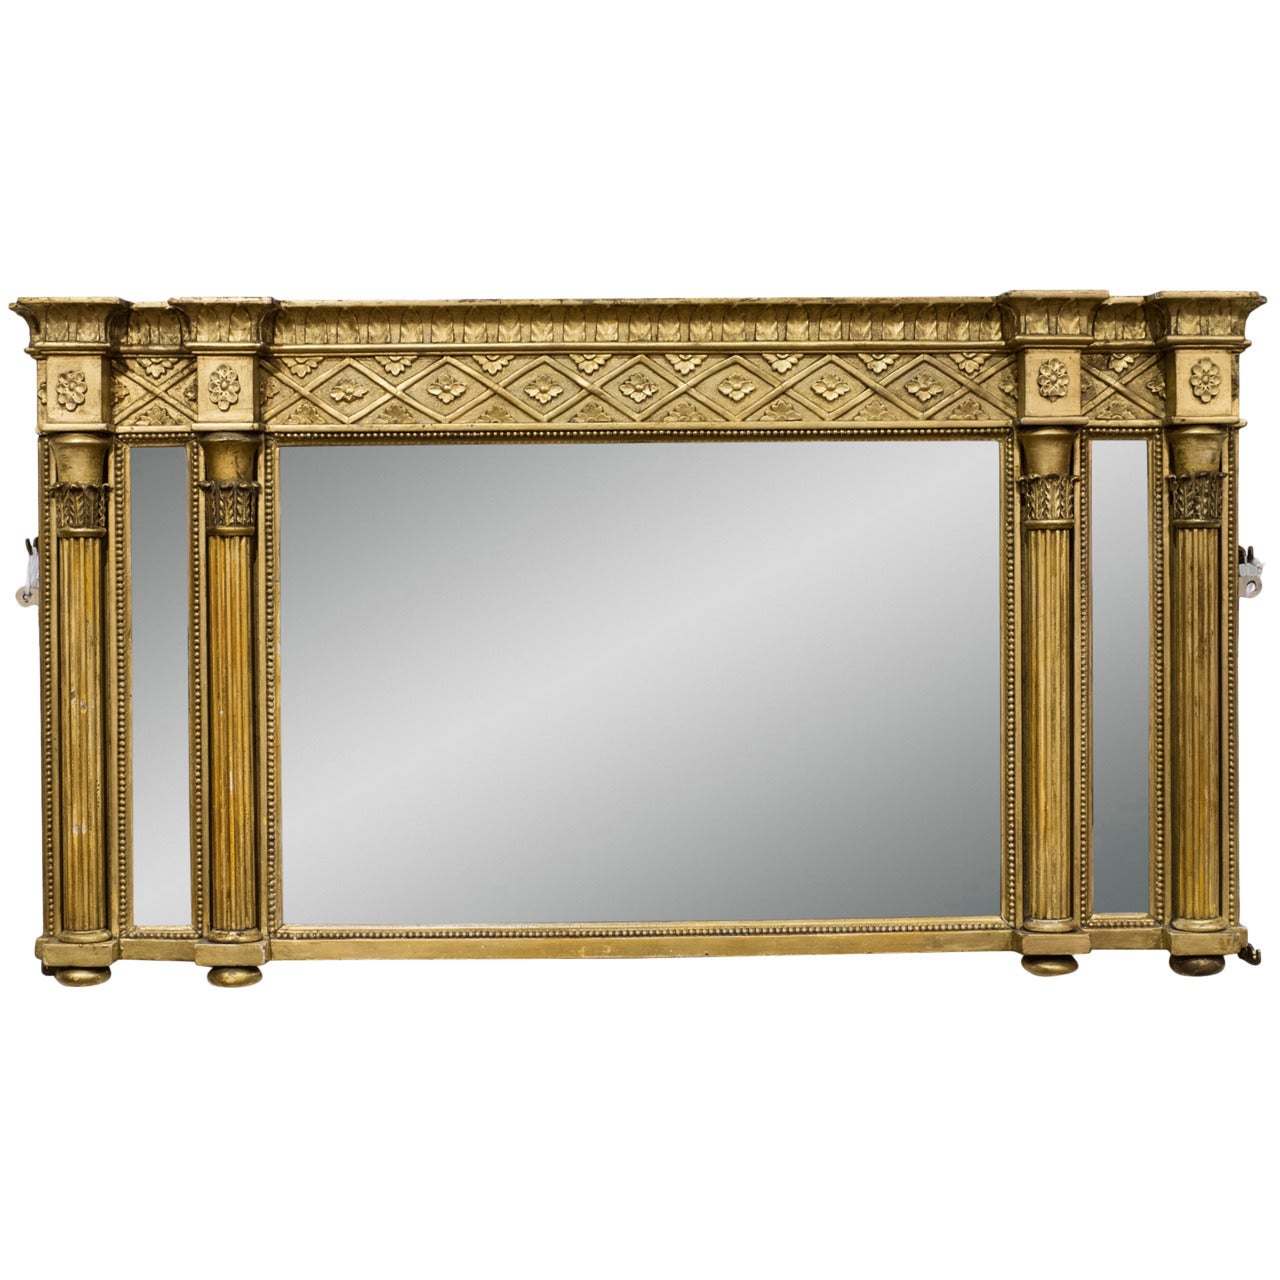 A Fine Regency Gilt Gesso Overmantel Mirror